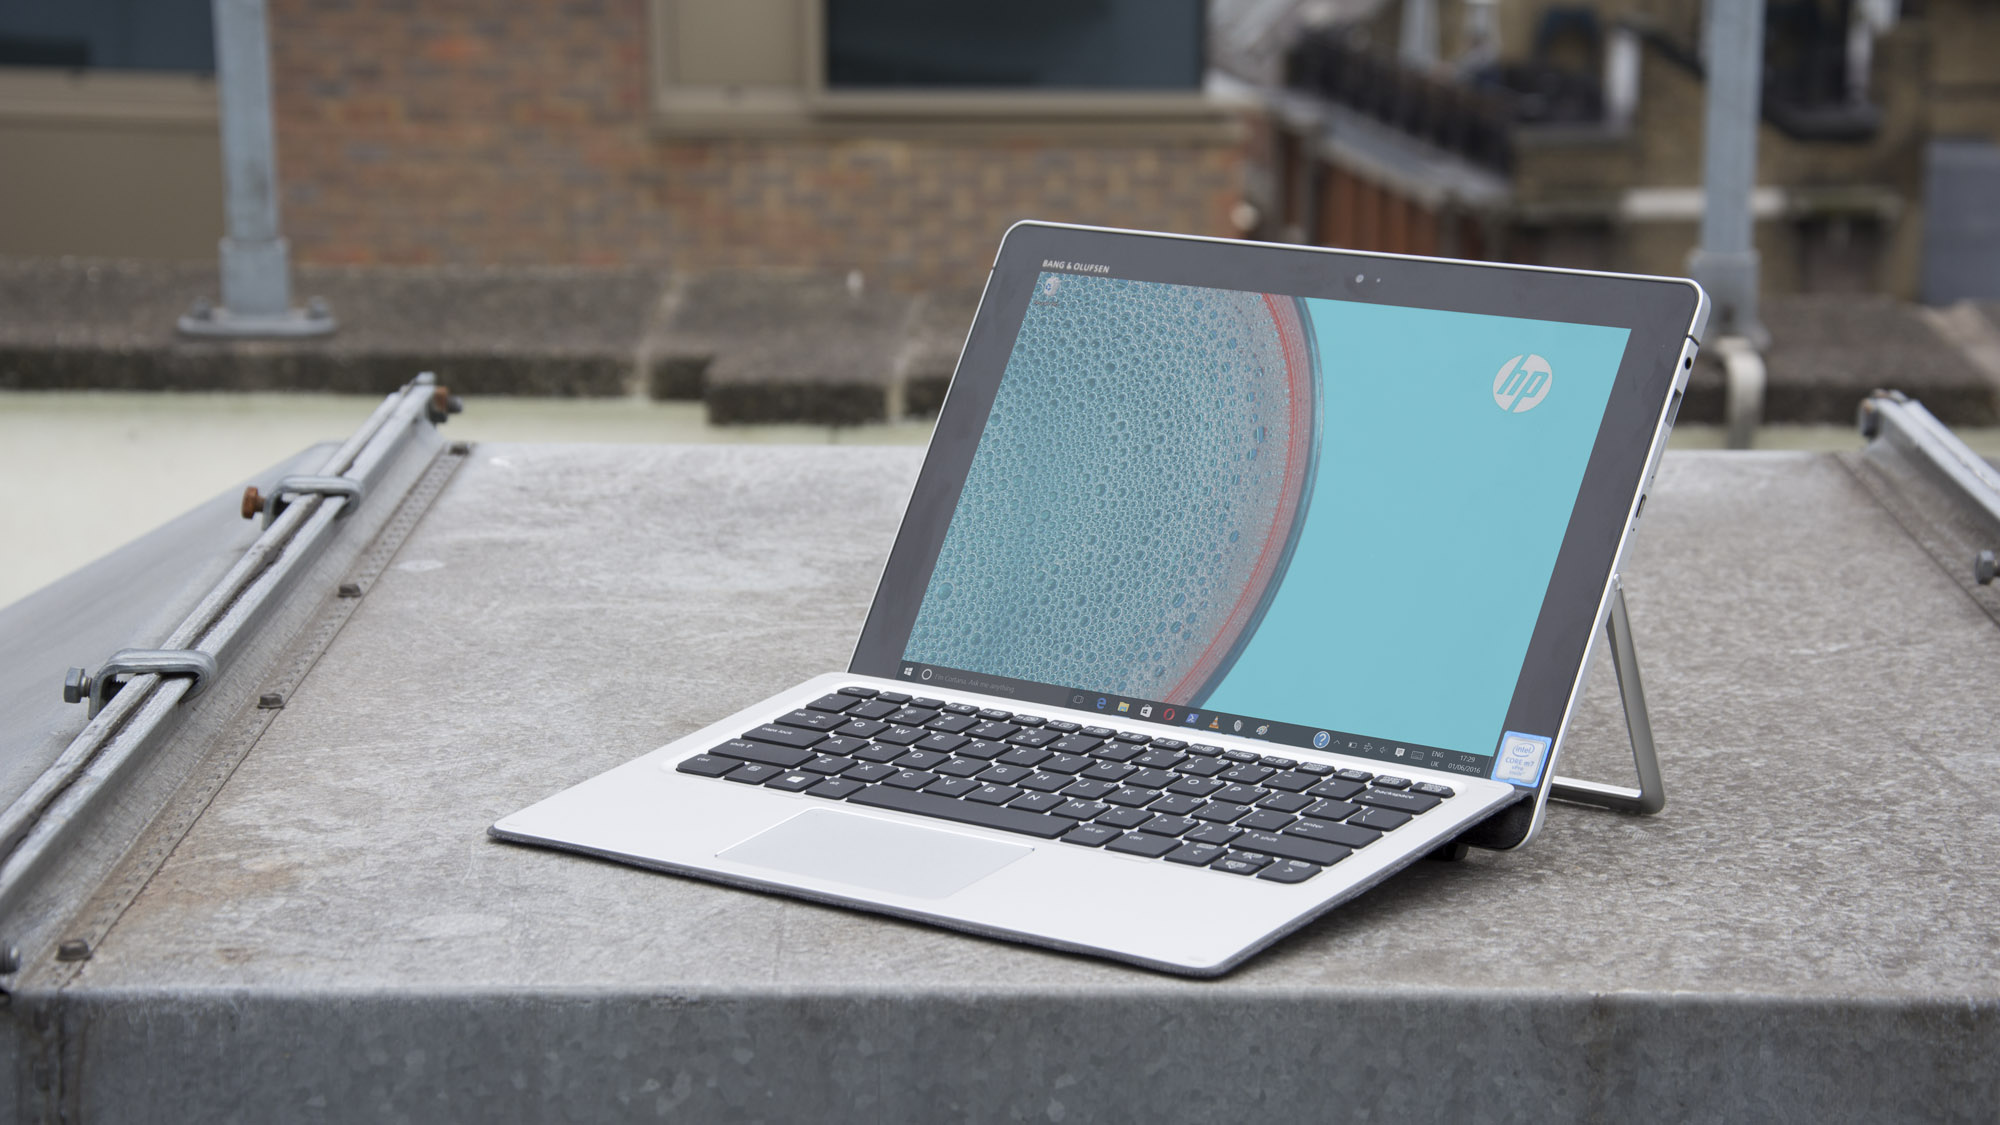 Pregled HP Elite x2: na nekatere načine premaga Surface Pro 4 (vendar ne v drugih)